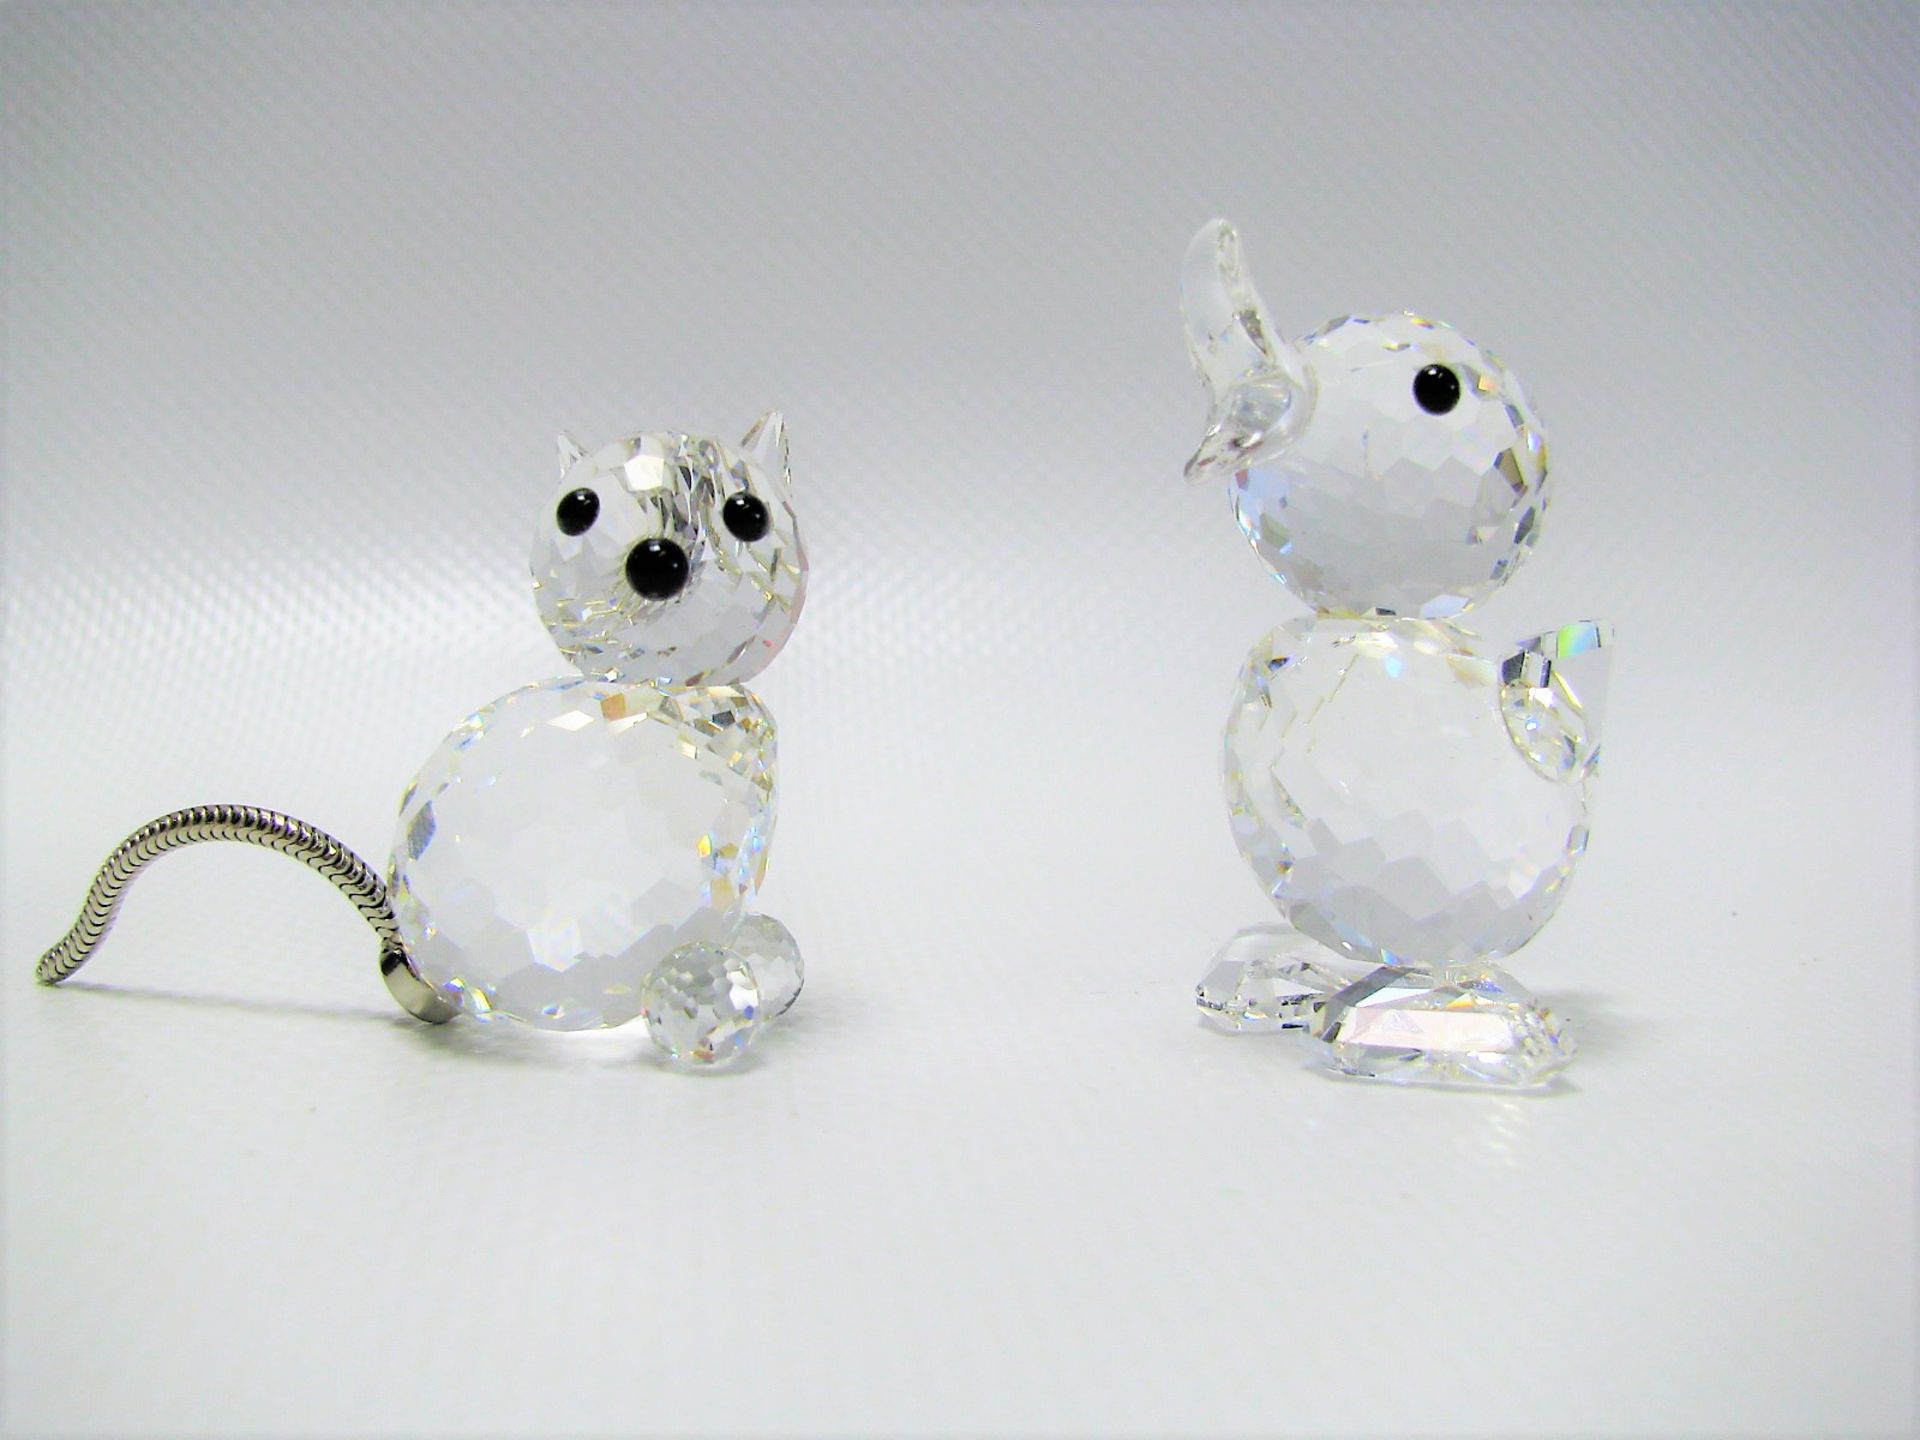 2 Swarovski Figuren, Ente und Katze, farbloses Kristallglas vielfach beschliffen, sign., h 3,1/4,5